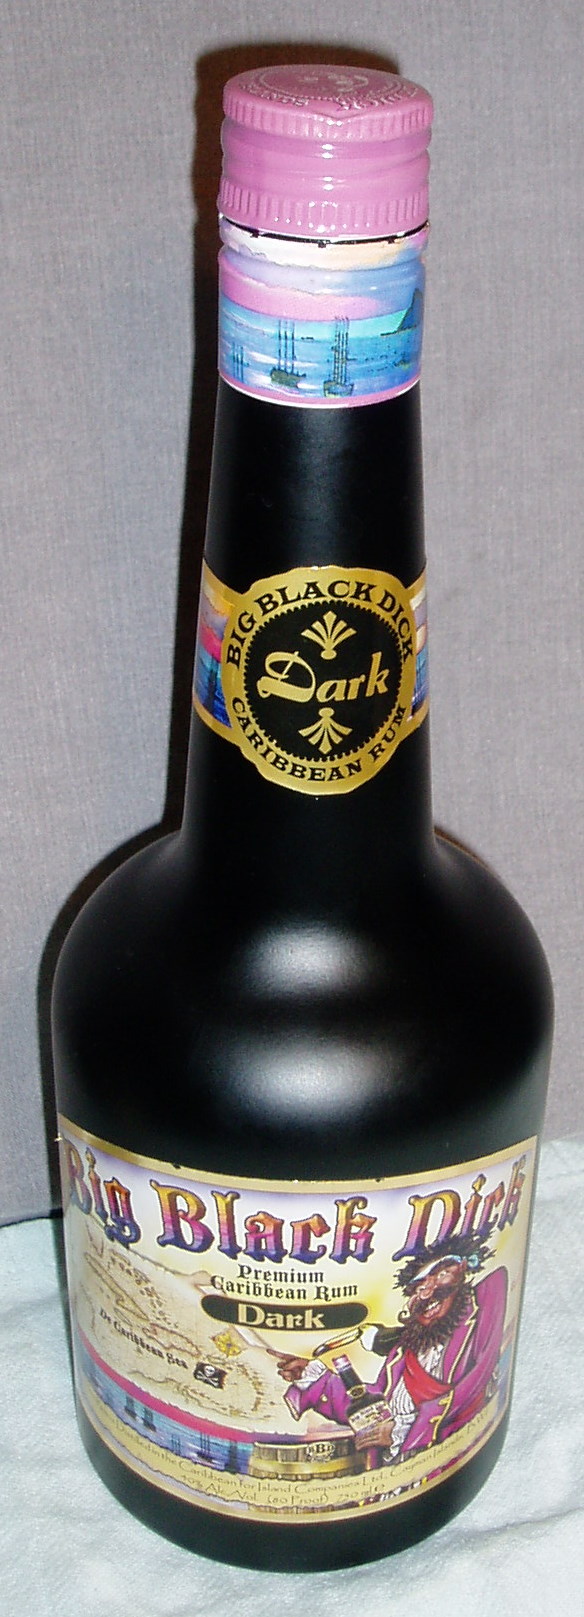 Big Black Dick Rum 109